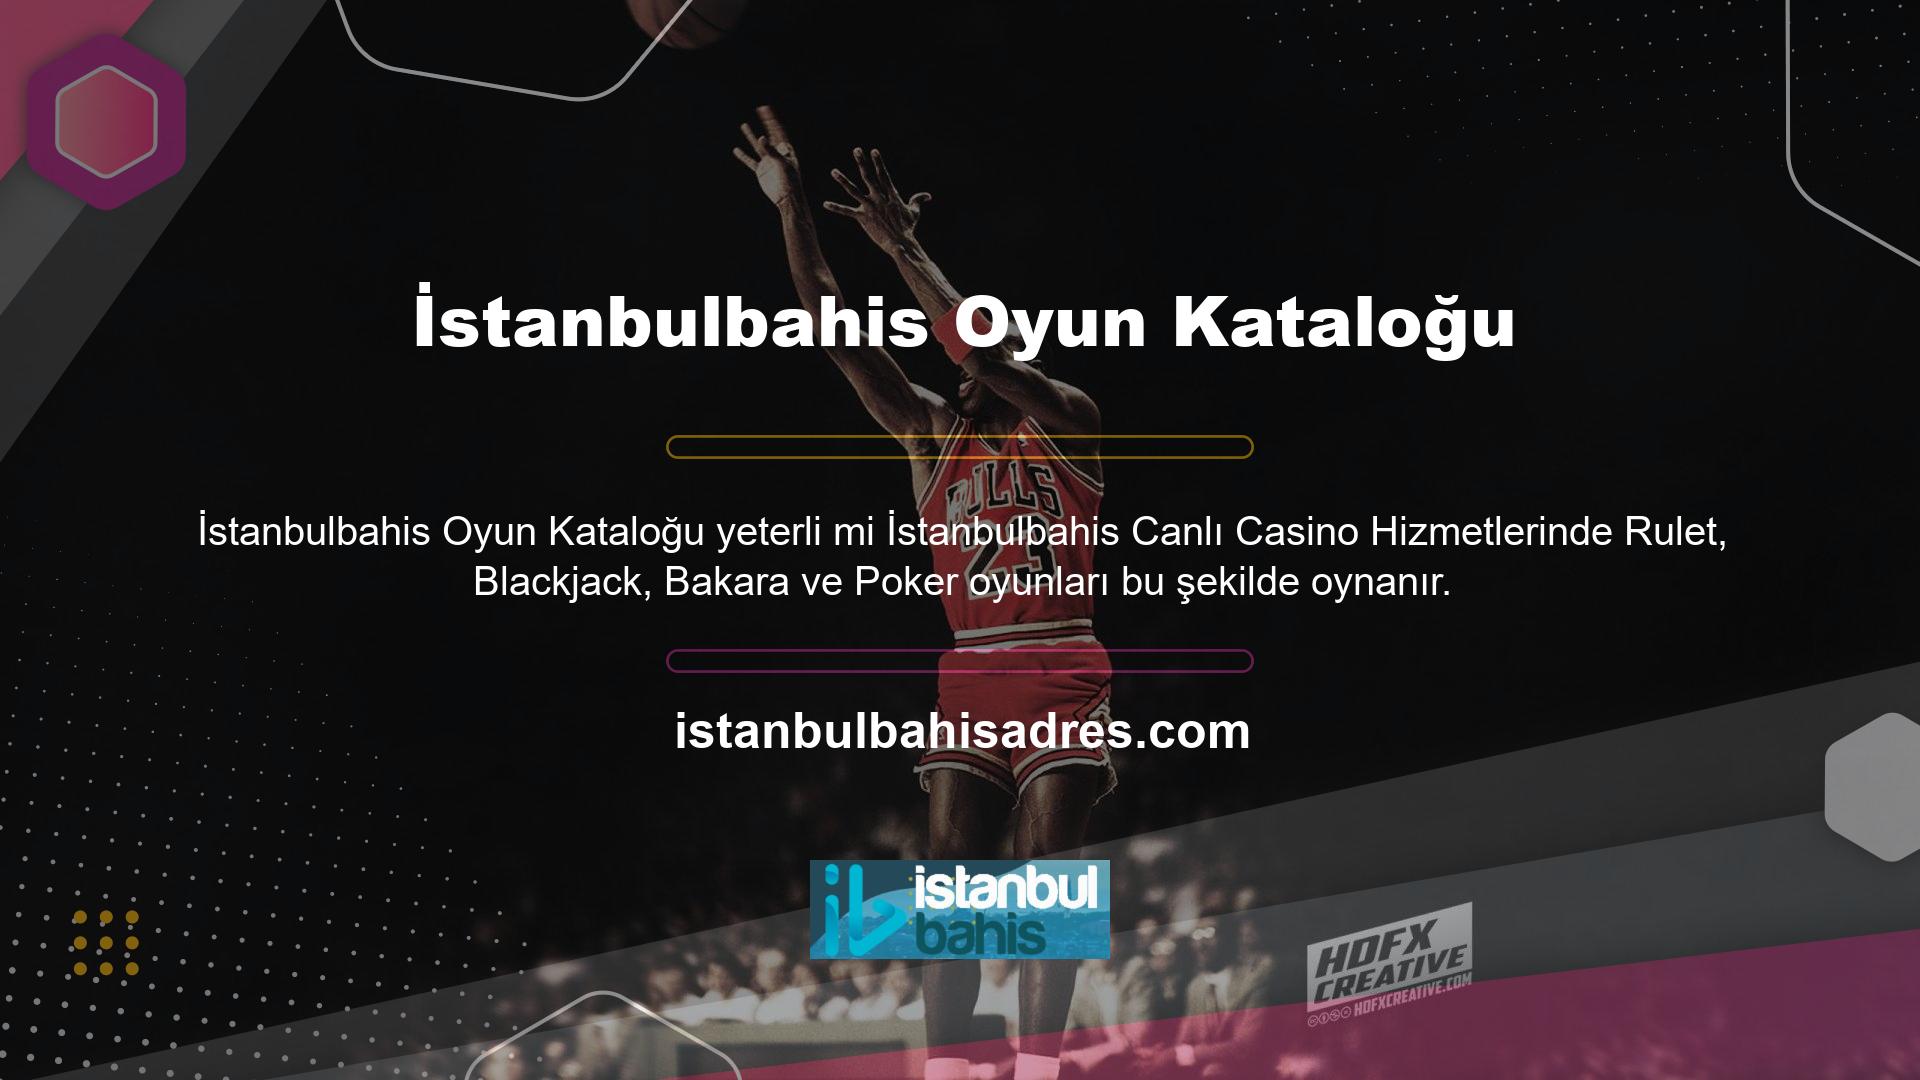 İstanbulbahis, en büyük karlı yasadışı bahisçilerden biridir, ancak casino, canlı casino oyunlarında İstanbulbahis oyun kataloğu yeterli mi güvenilirliği sunar